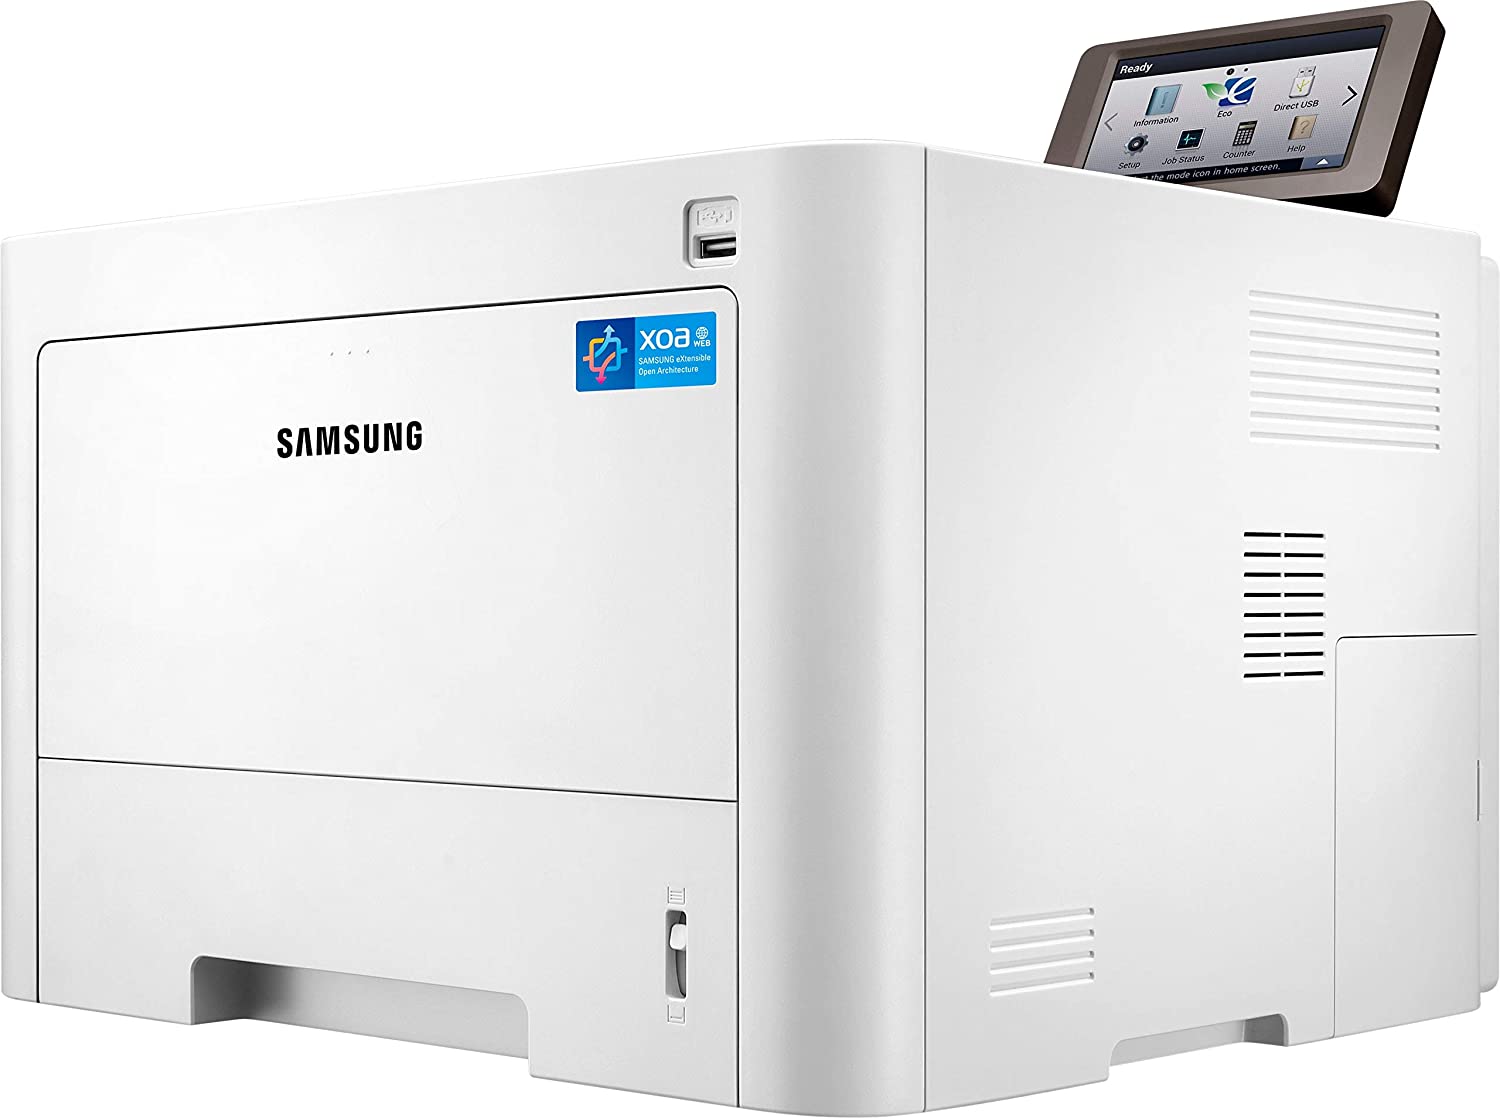 Samsung ProXpress M4025NX B/W Printer 40 ppm 1200x1200 DPI Duplex Network